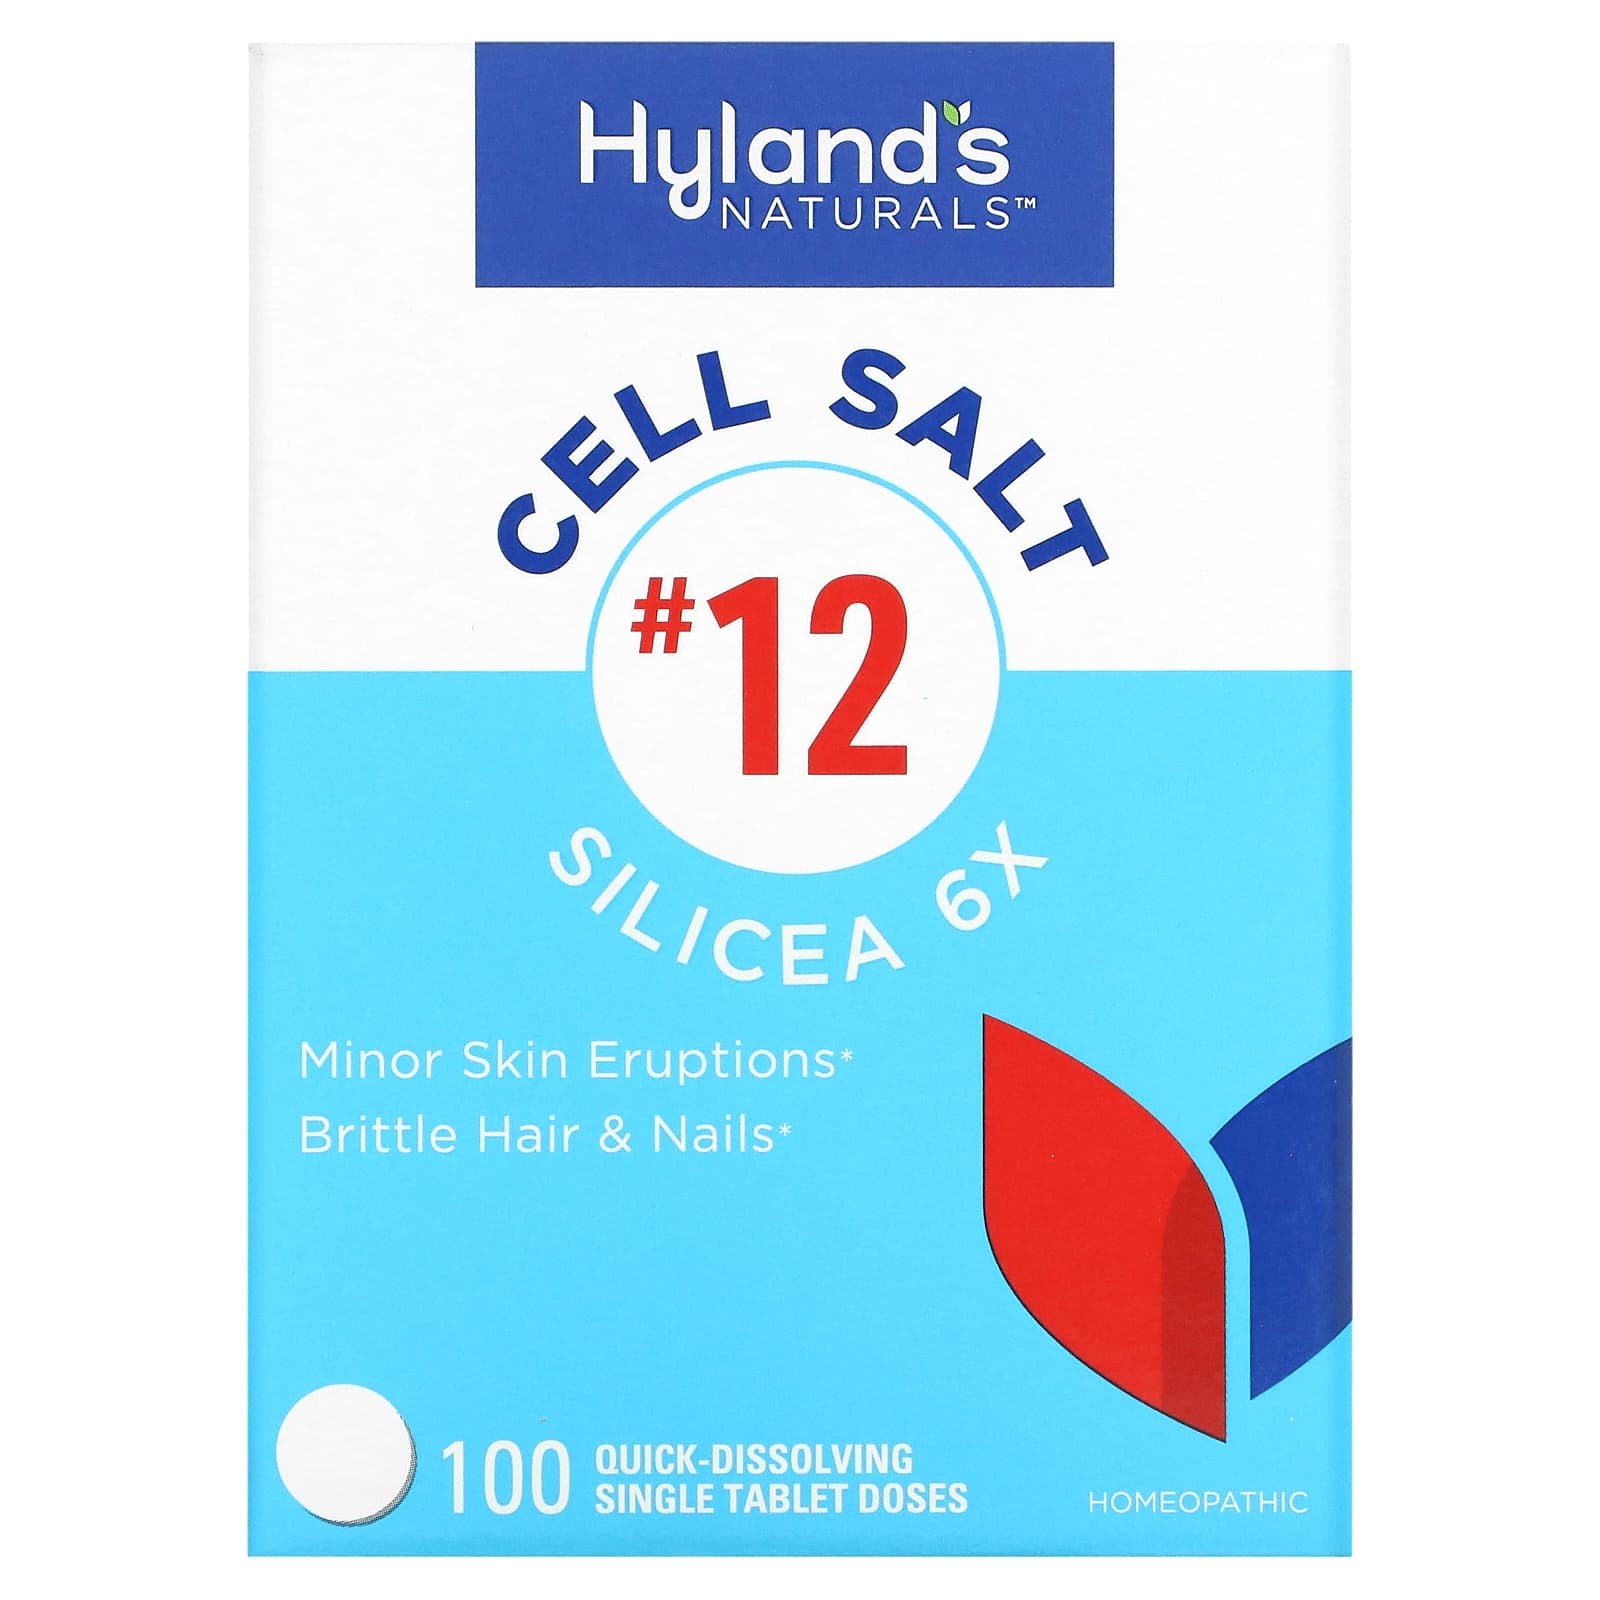 Клеточная Соль №12 / Силицея 6X Hyland's, 100 быстрорастворимых таблеток hyland s 12 в 1 клеточная соль 100 быстрорастворимых отдельных таблеток